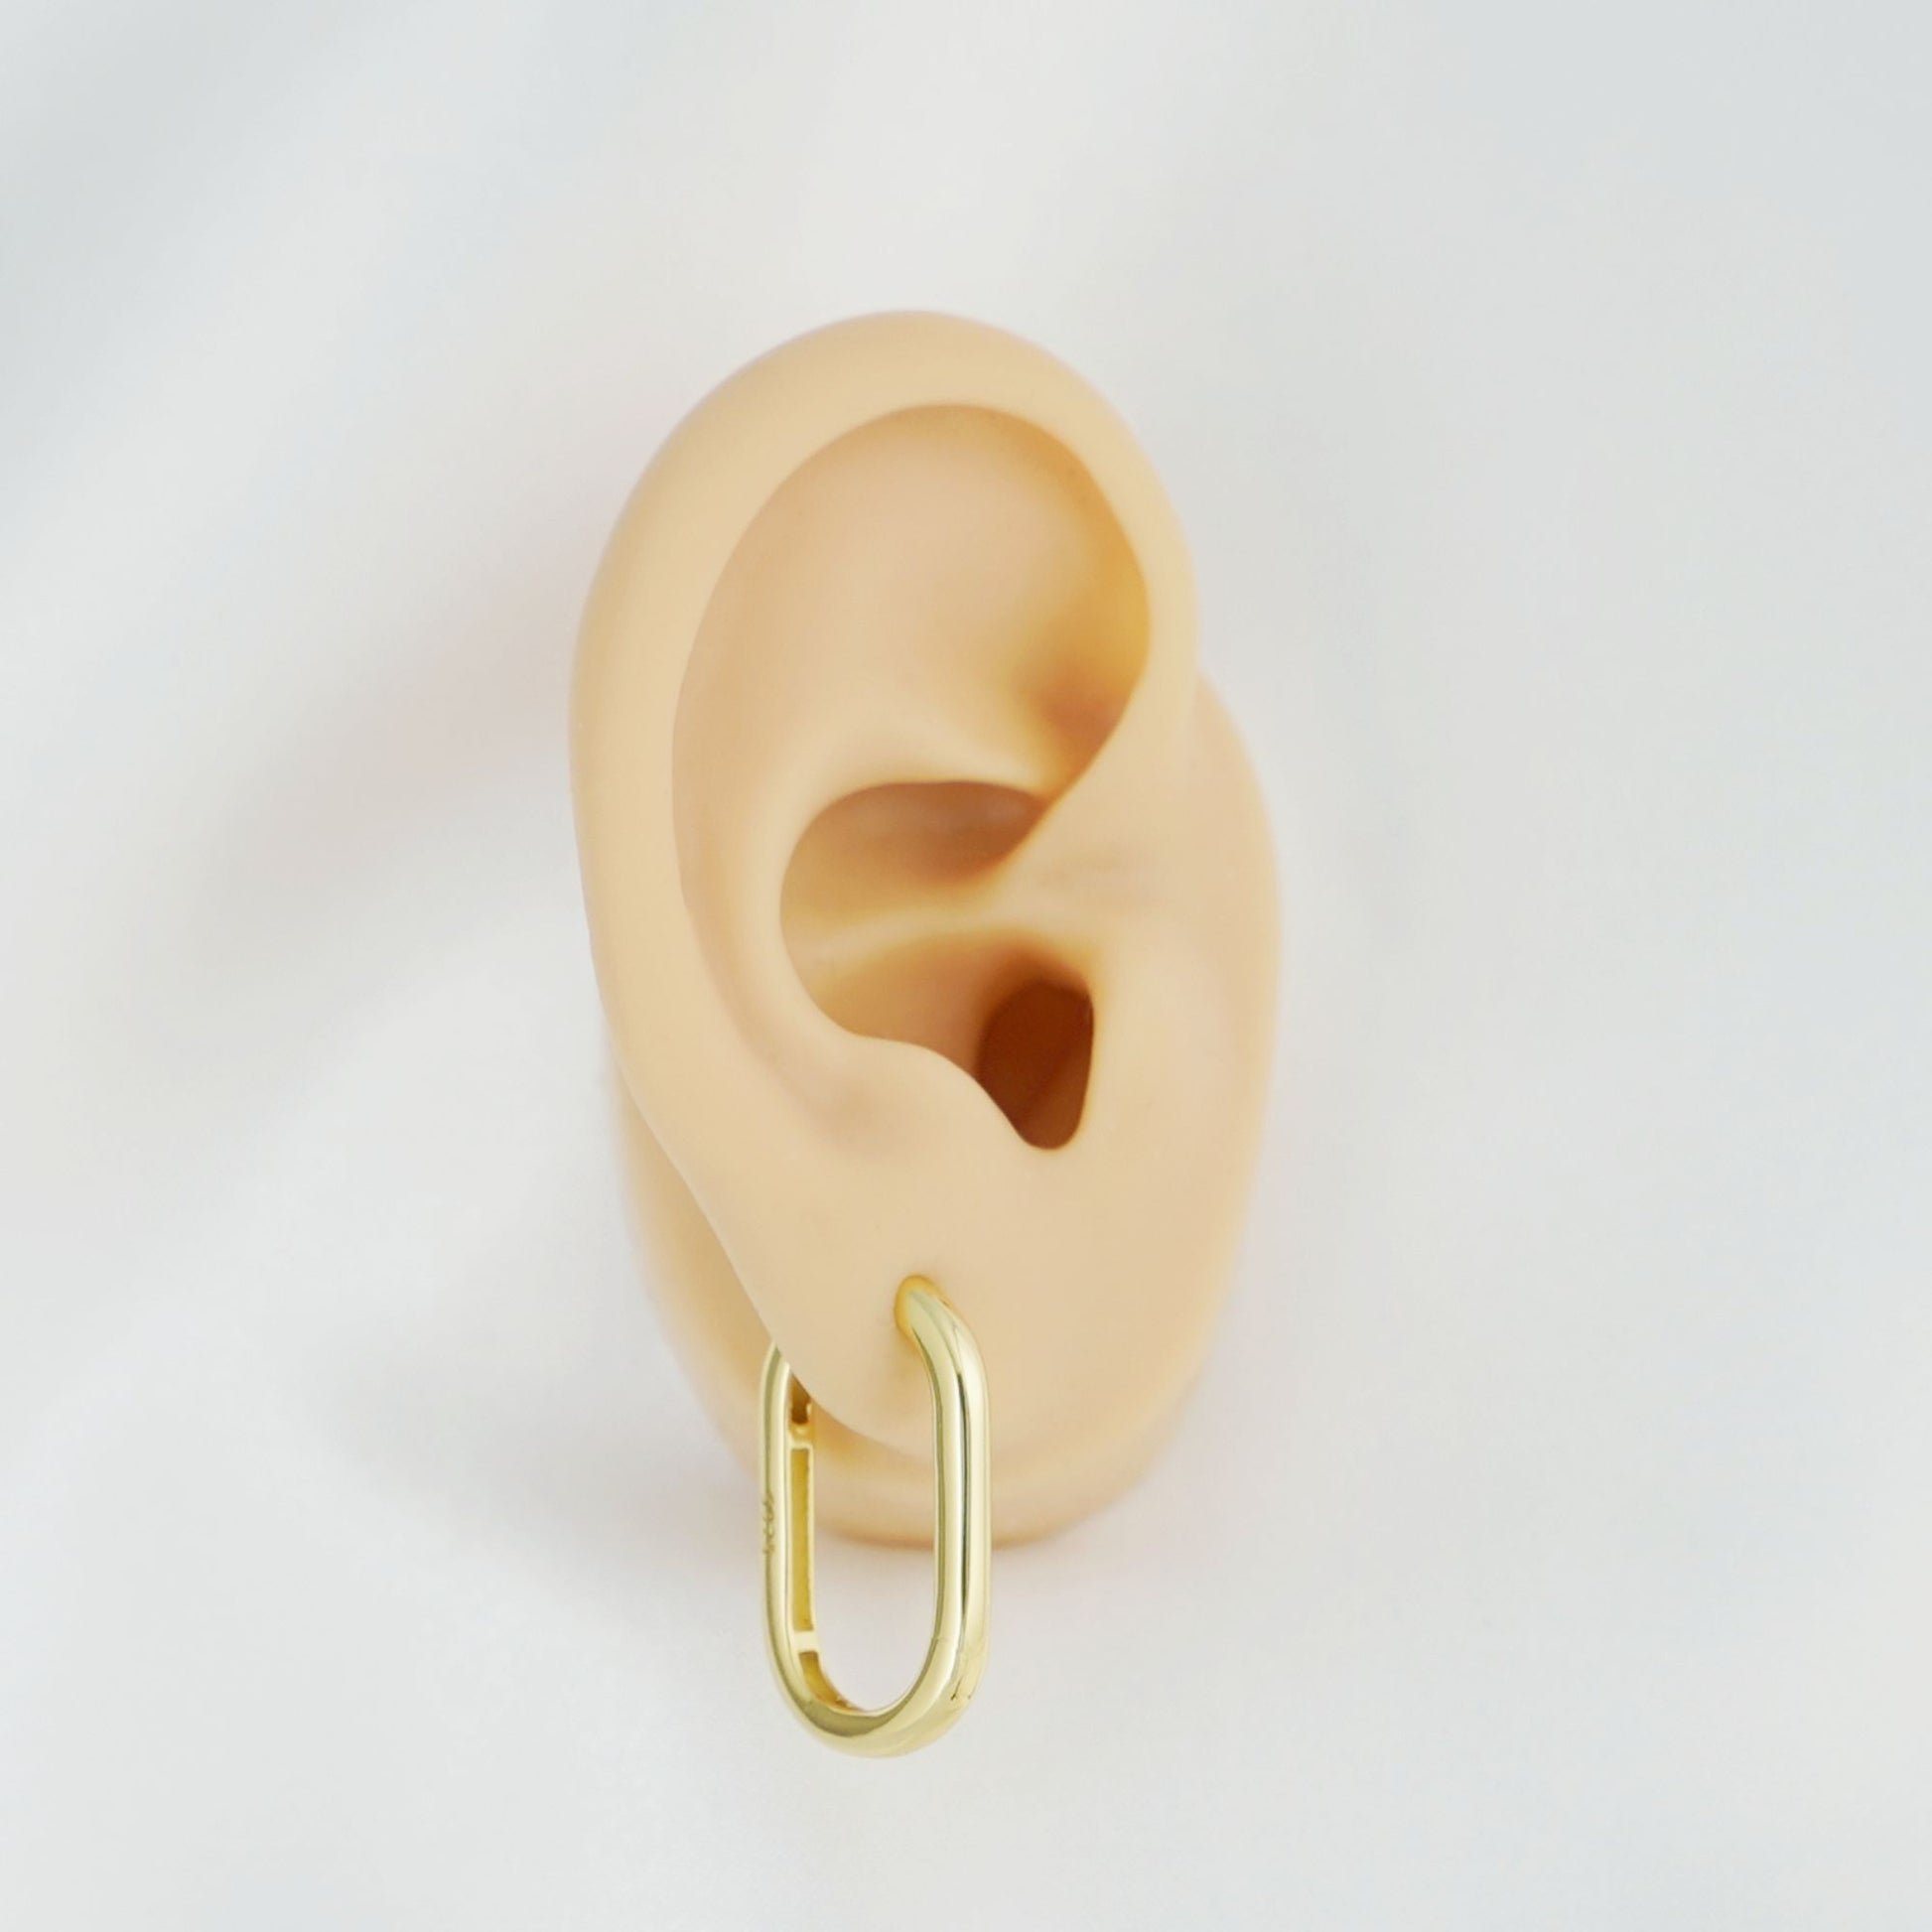 26mm 18K Gold Oval Hoop Earrings with Sterling Silver Backing - sugarkittenlondon